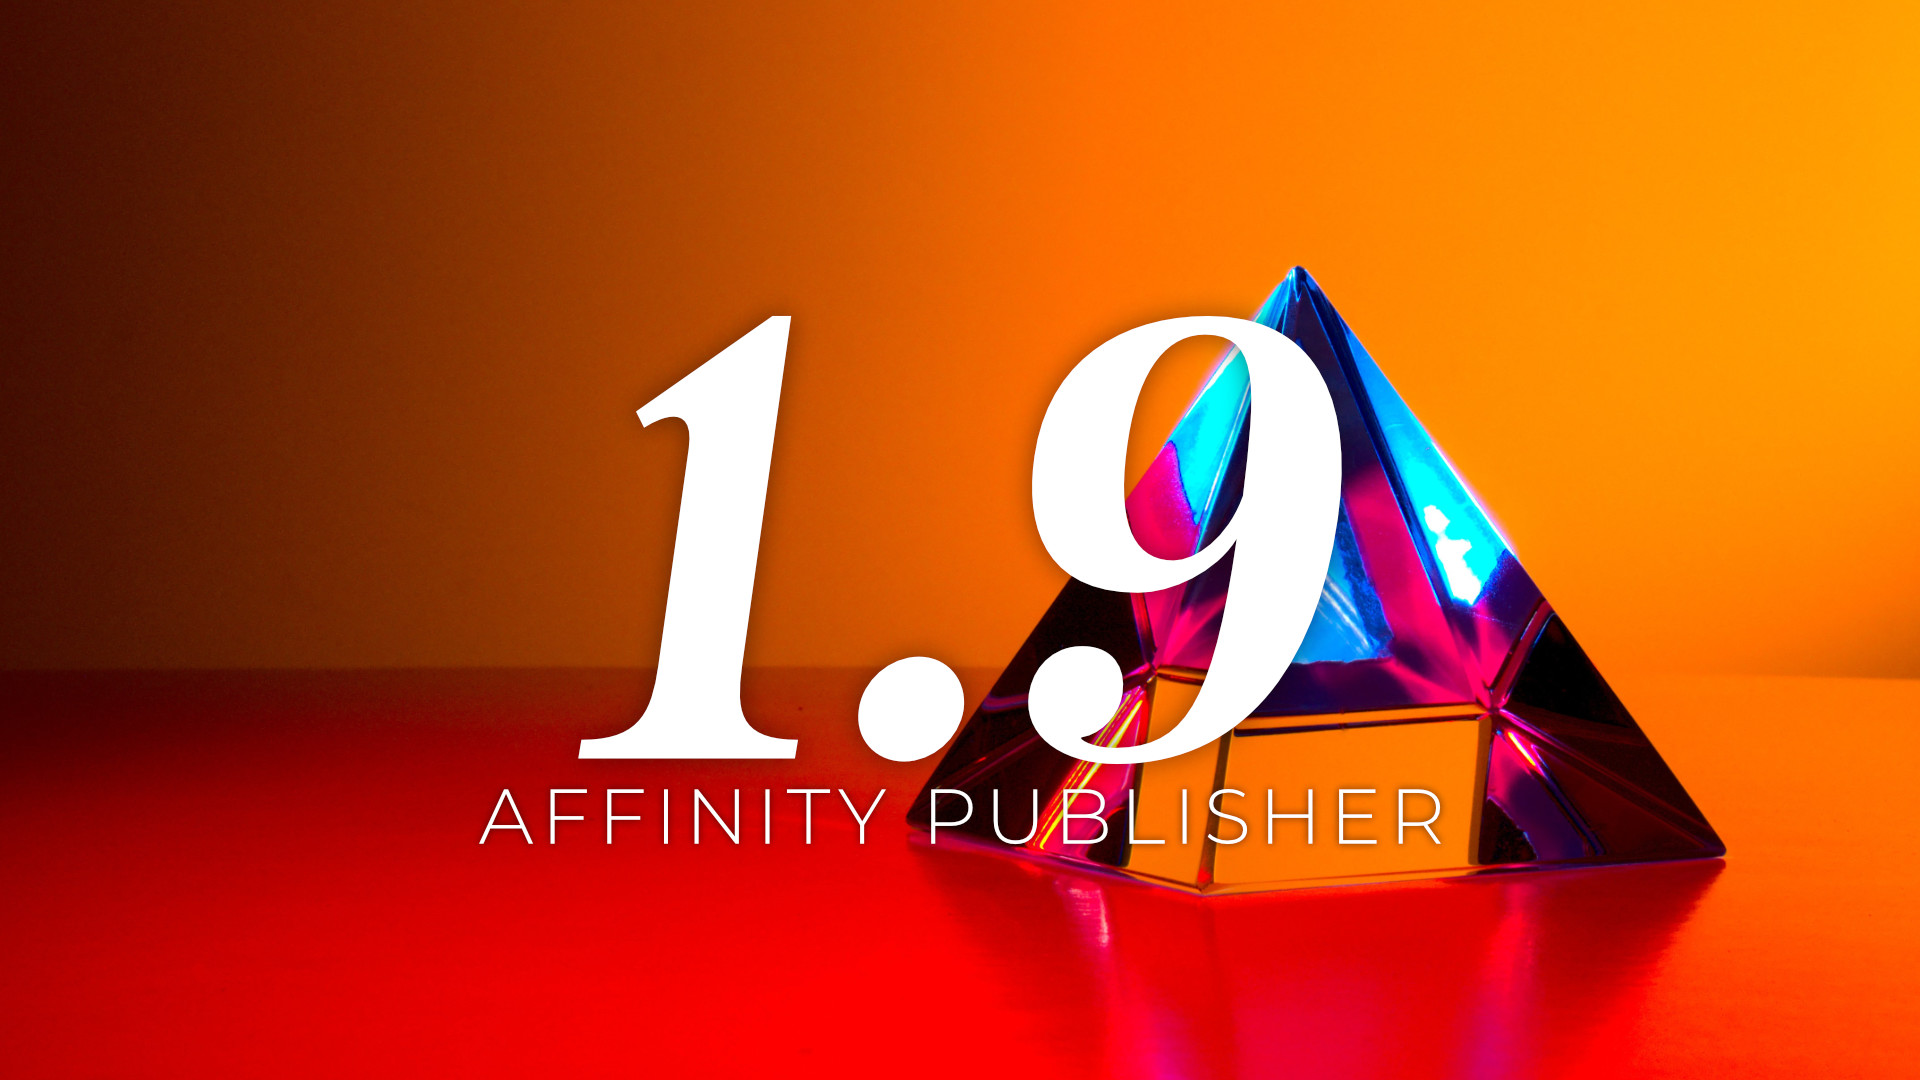 affinity publisher news 2018